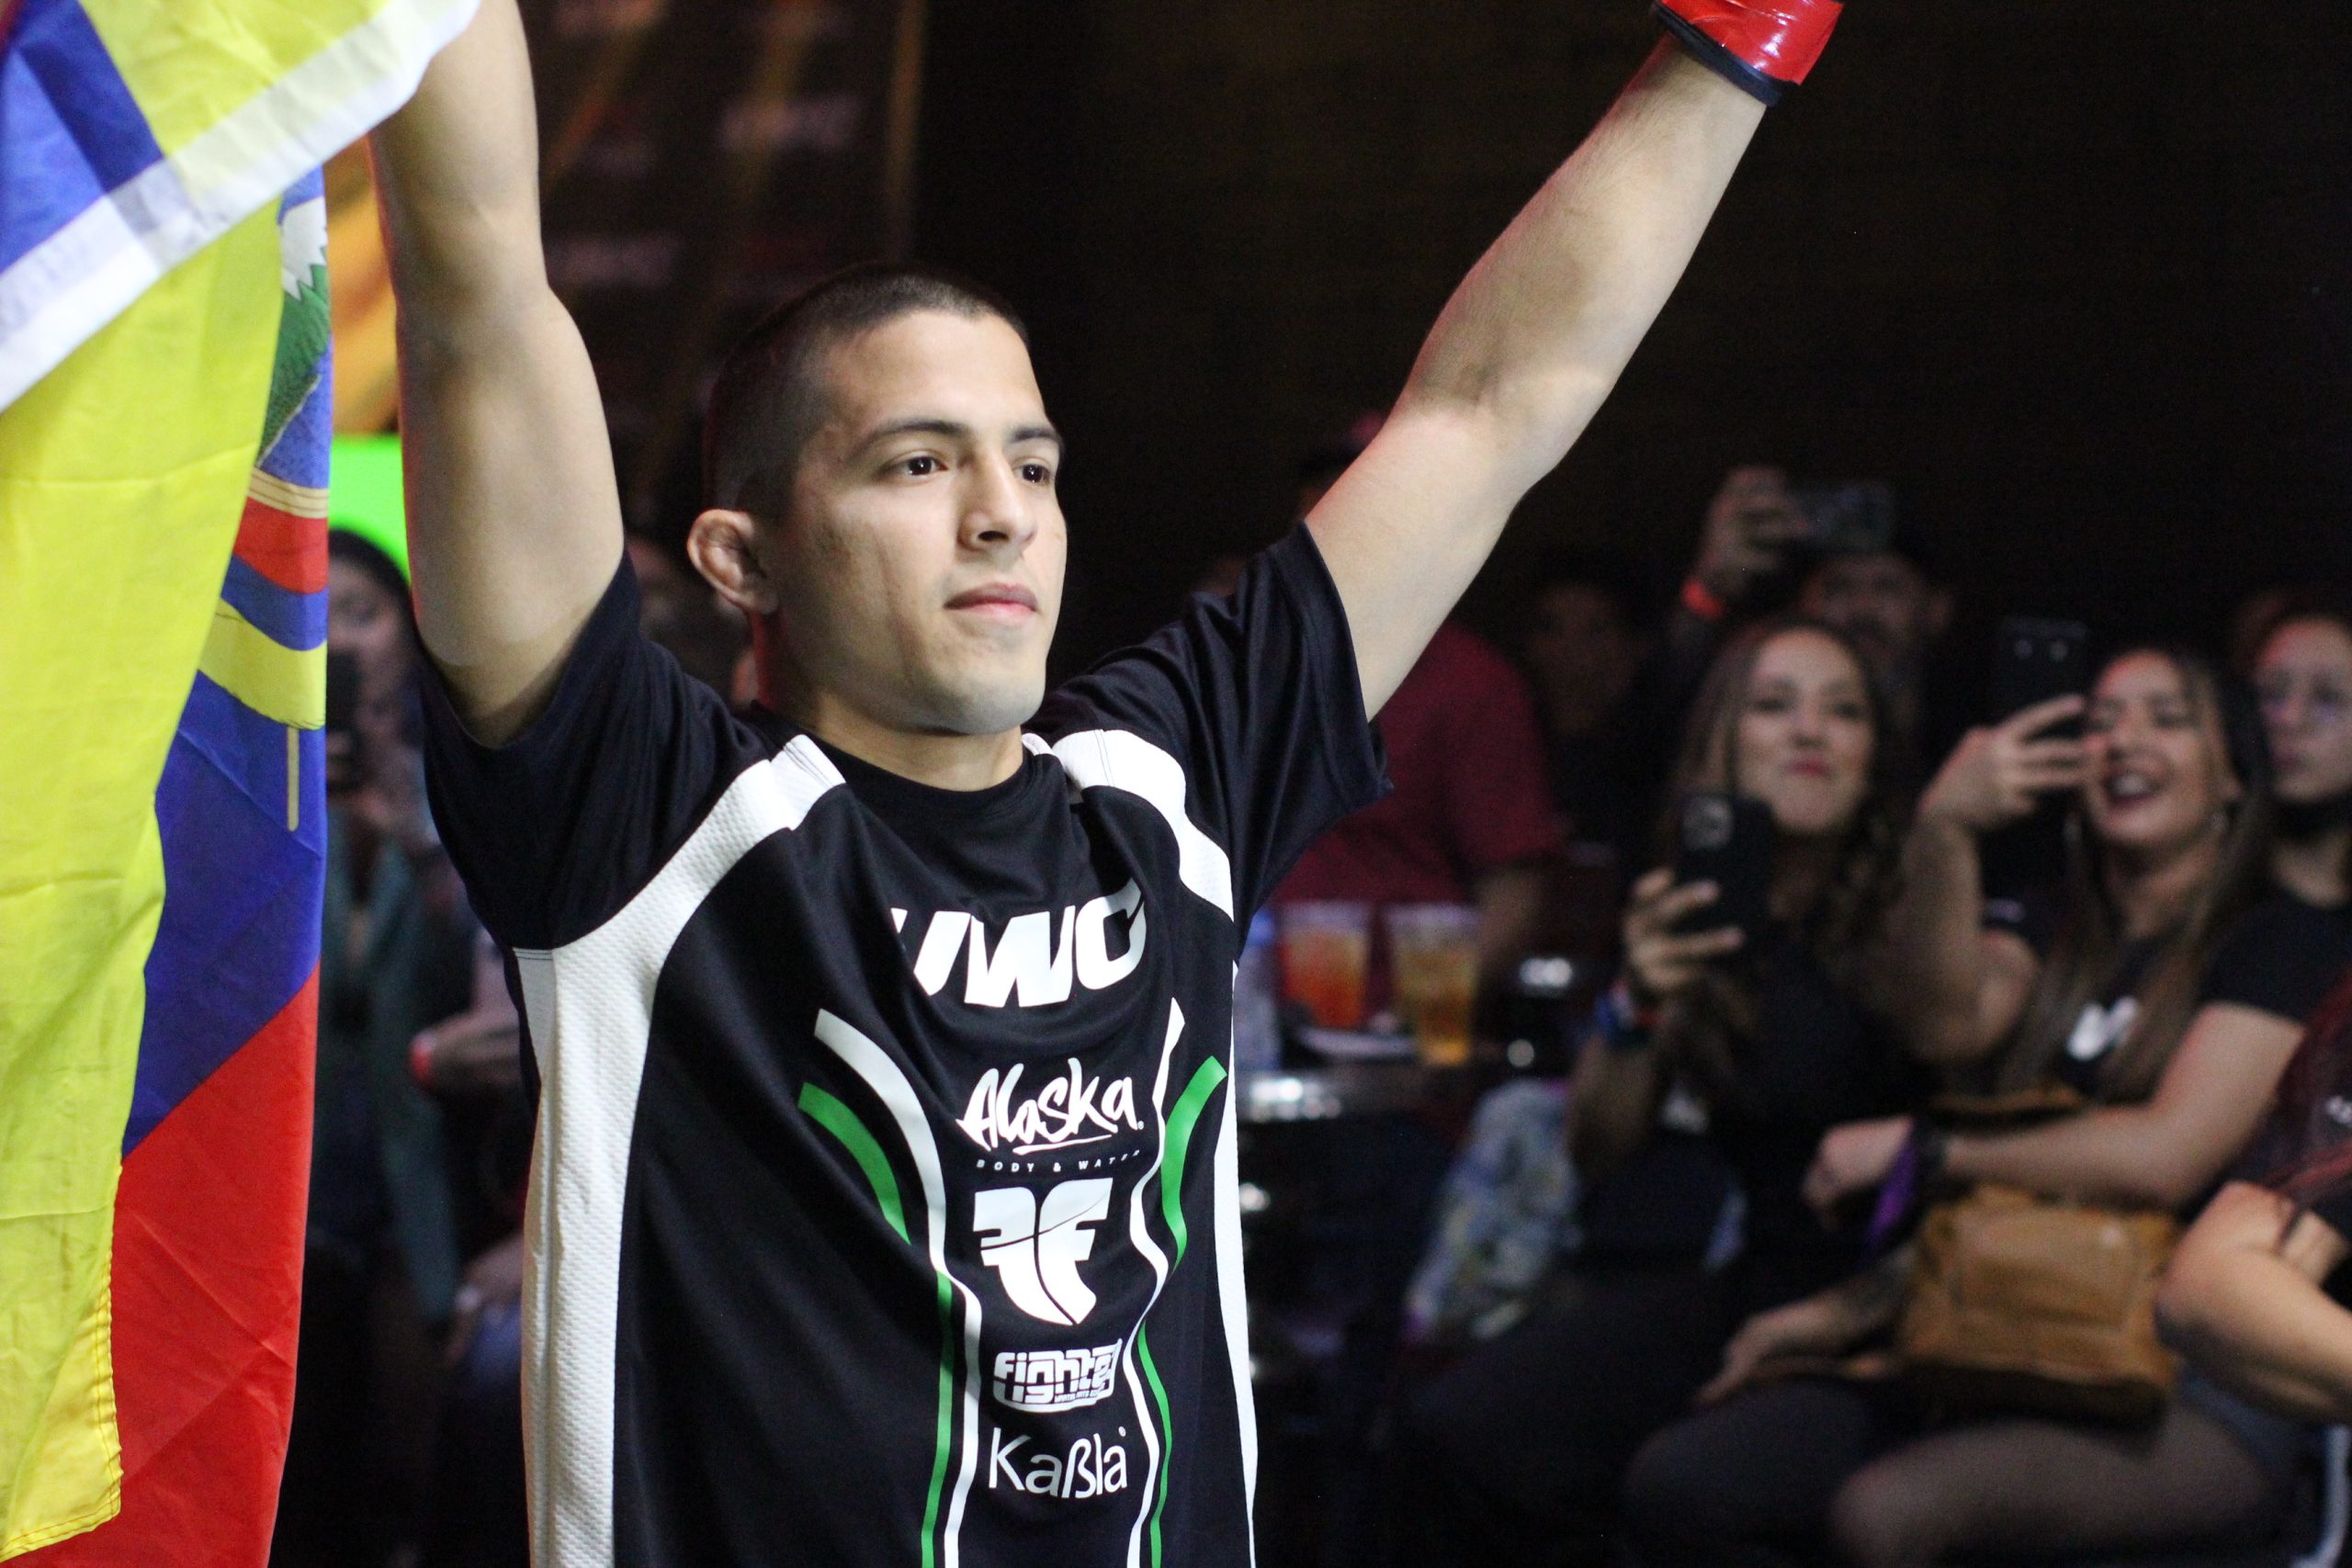 Andrés Luna peleará en el Dana White’s Contender Series el Martes 26 de Julio